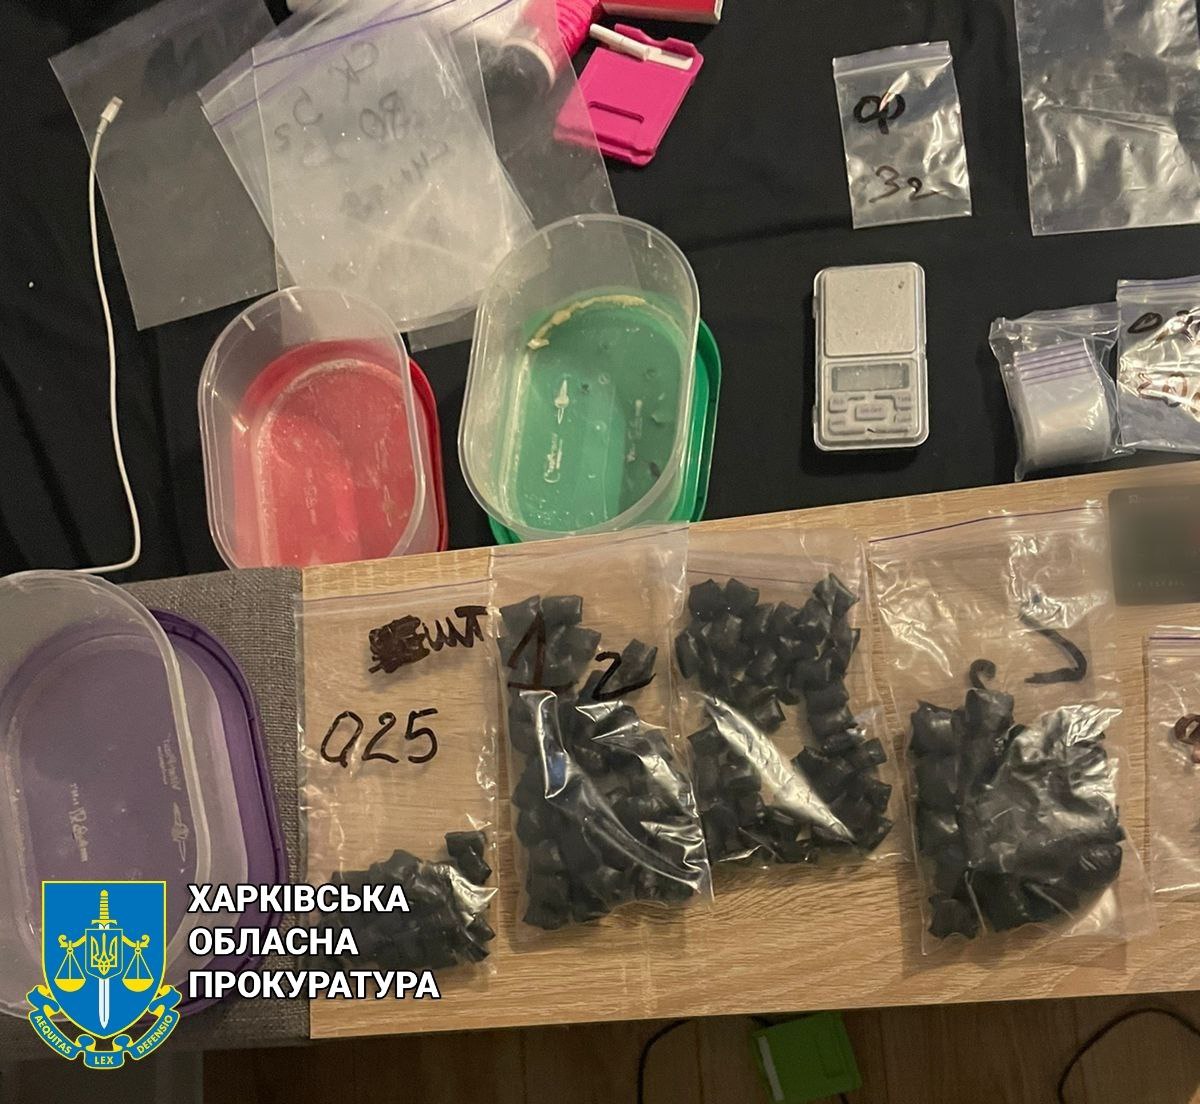 Хотел подзаработать: 20-летний днепрянин разложил "закладки" с наркотиками по всему Харькову.